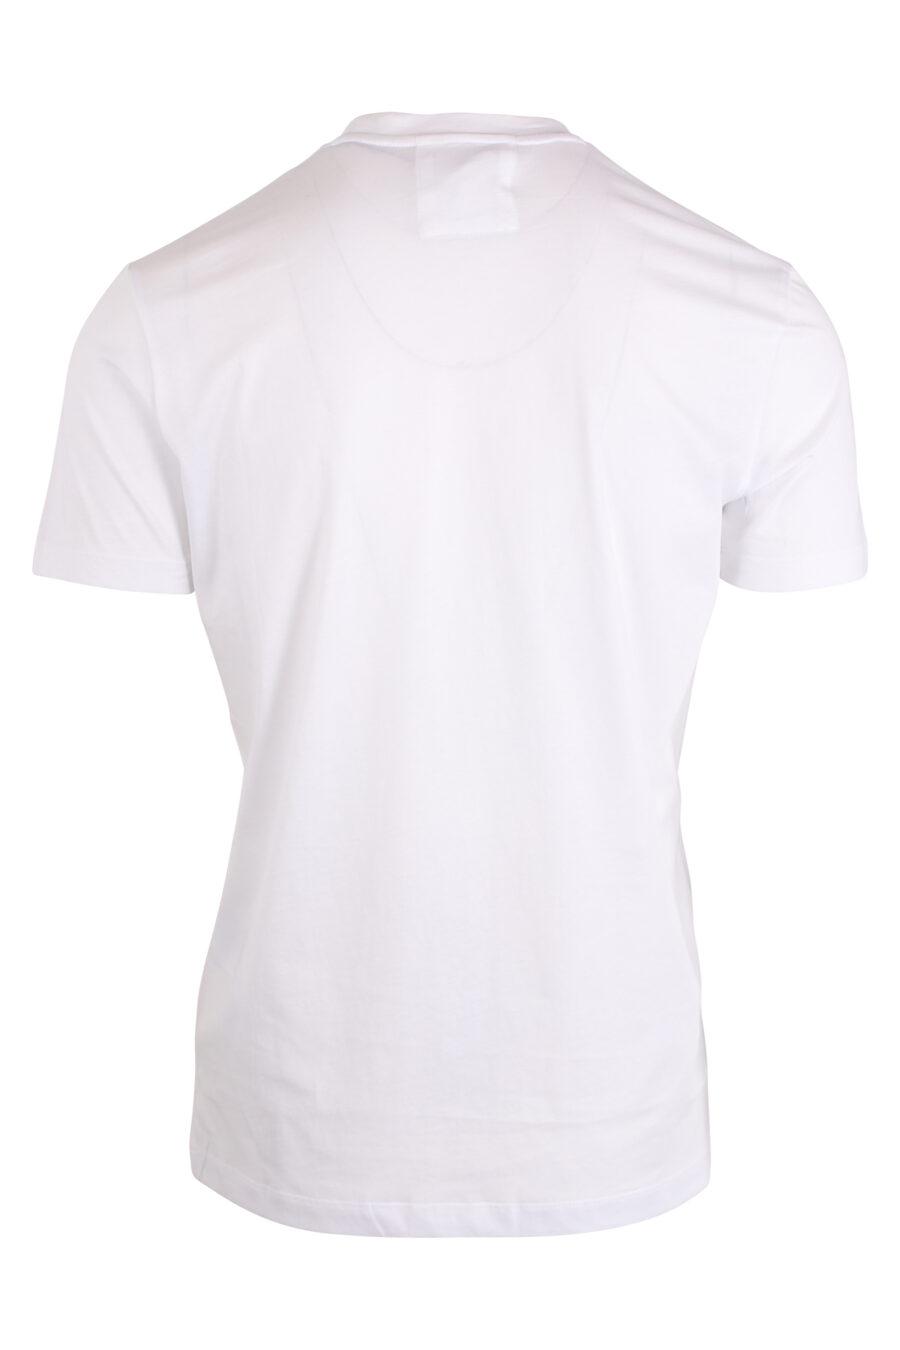 Weißes T-Shirt mit schwarzem Schriftzug - IMG 4269